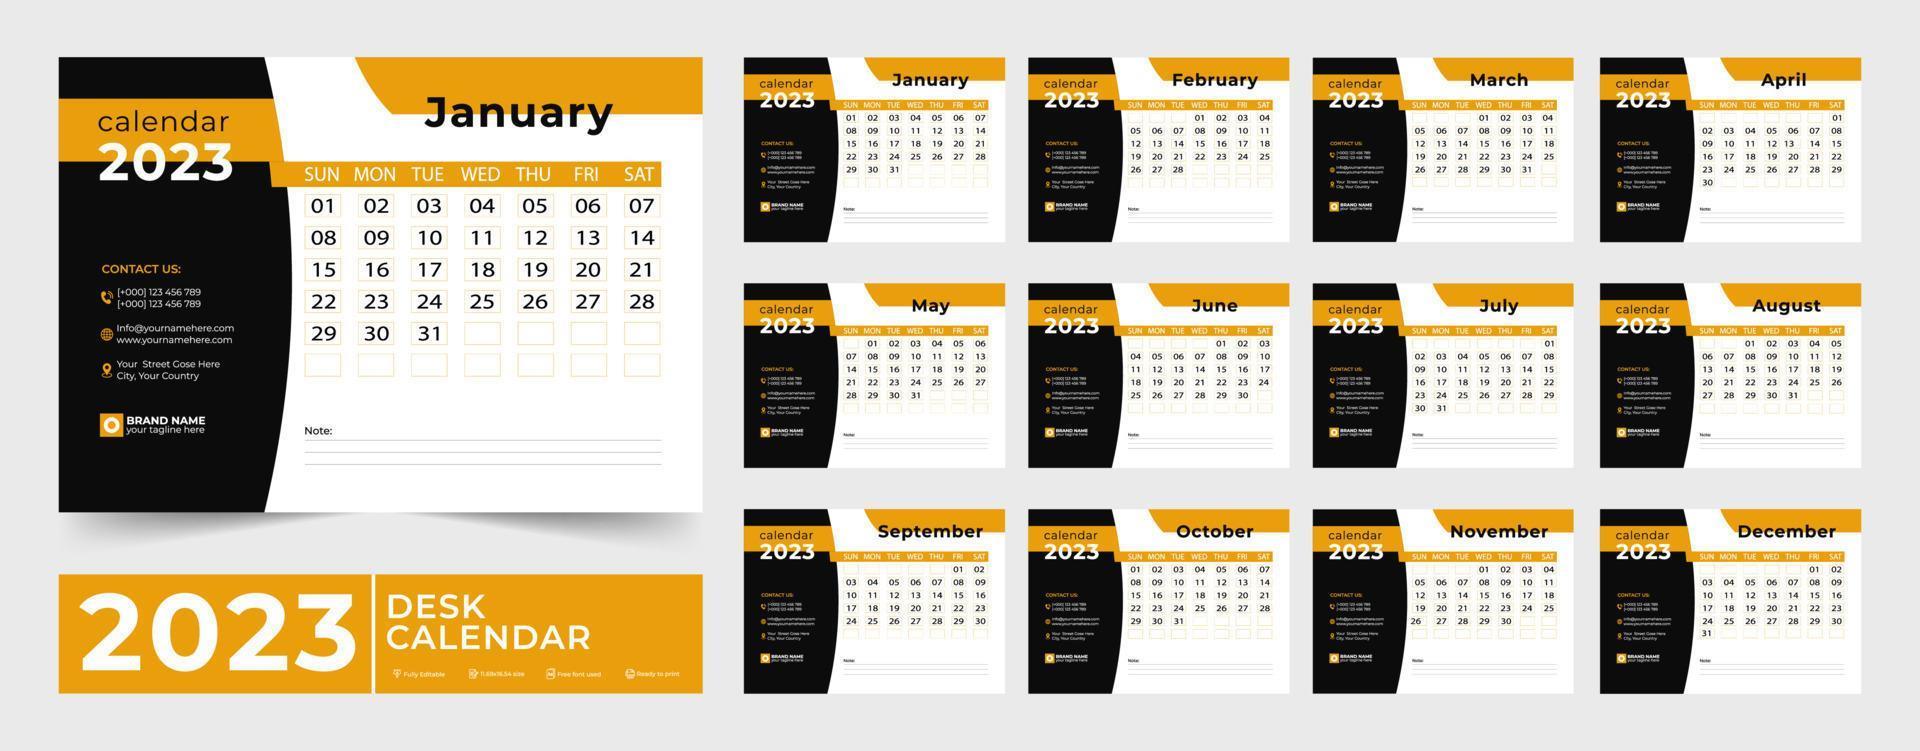 Kalender 2023 Planer Corporate Template Design Set. Woche beginnt am Montag. Vorlage für Jahreskalender 2023. Monatskalendervorlage für 2023 Jahr. vektor